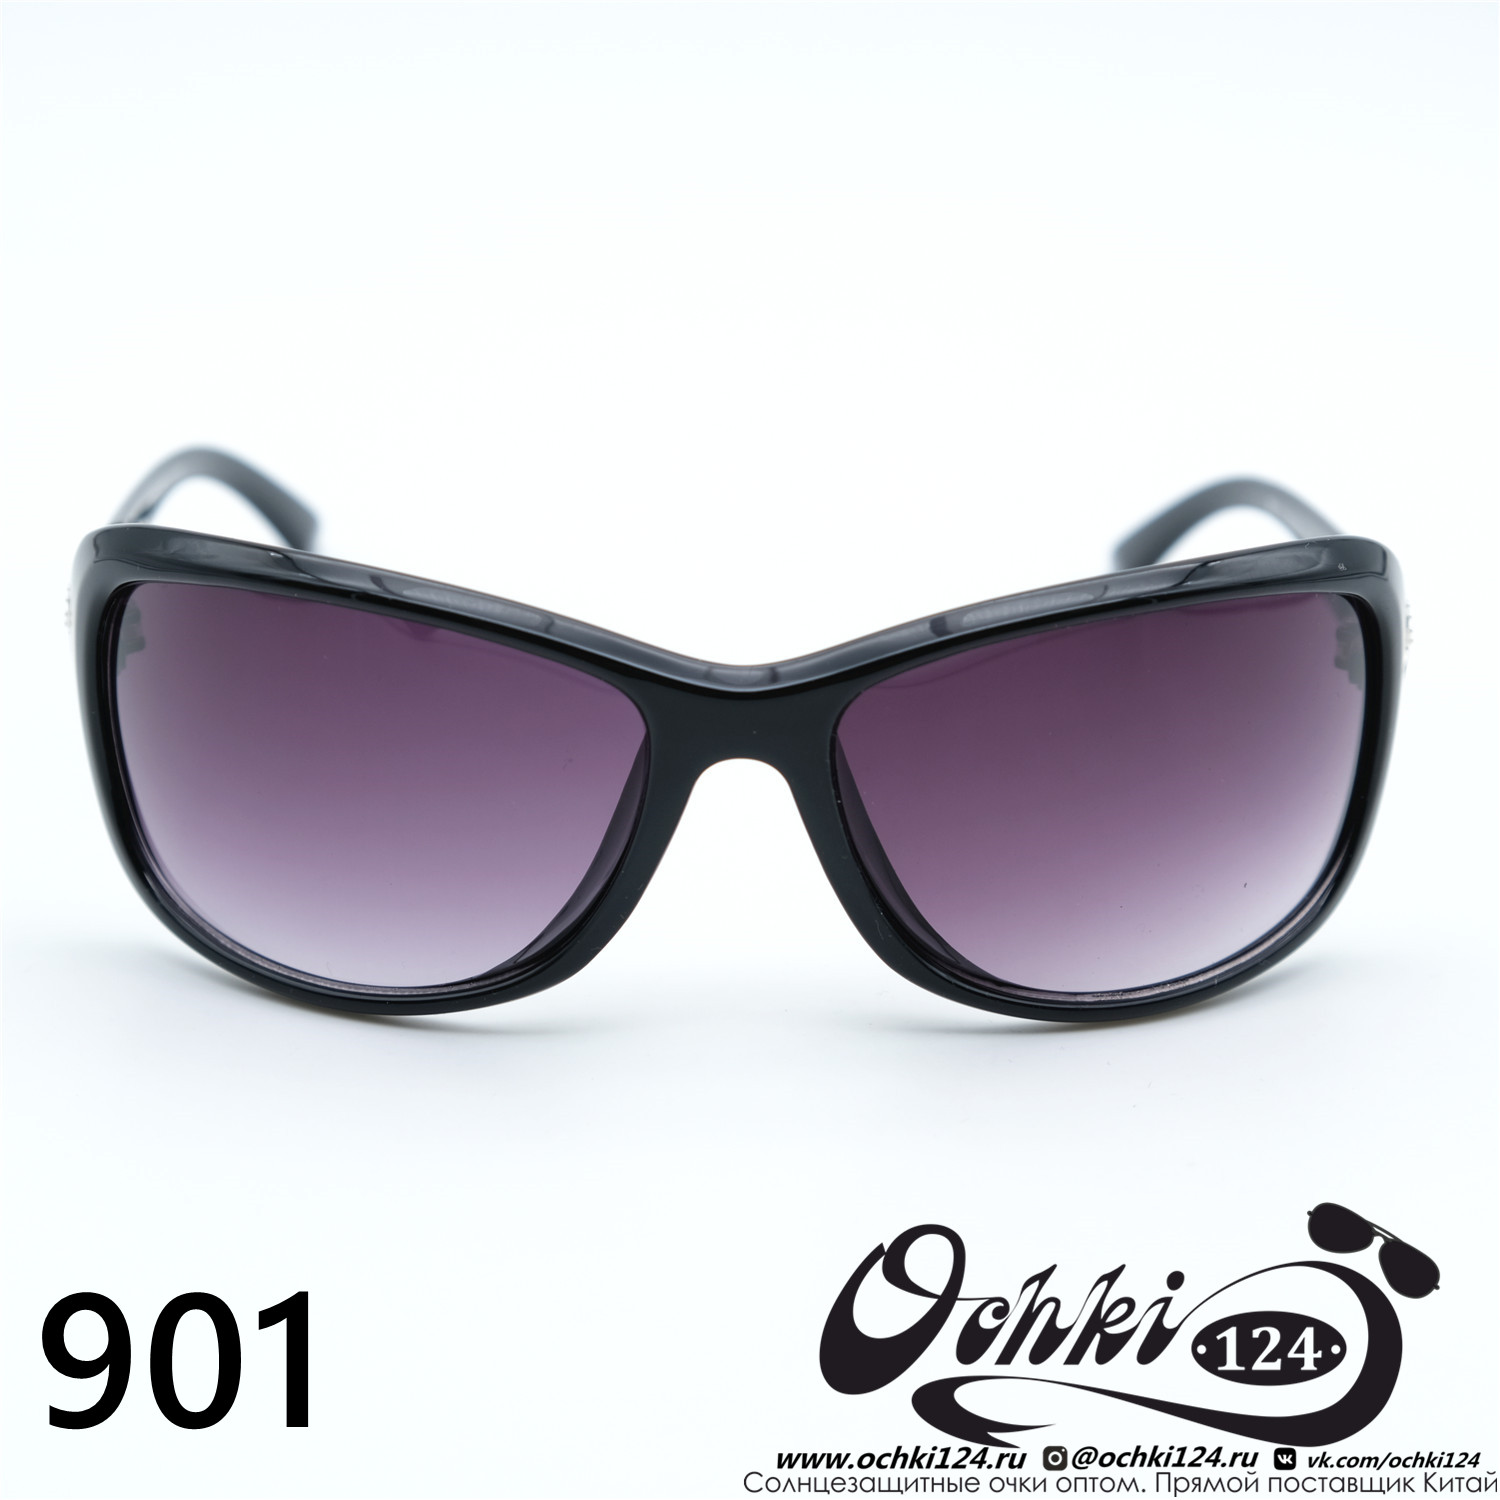  Солнцезащитные очки картинка Женские Prius  Стандартные 901-C1 